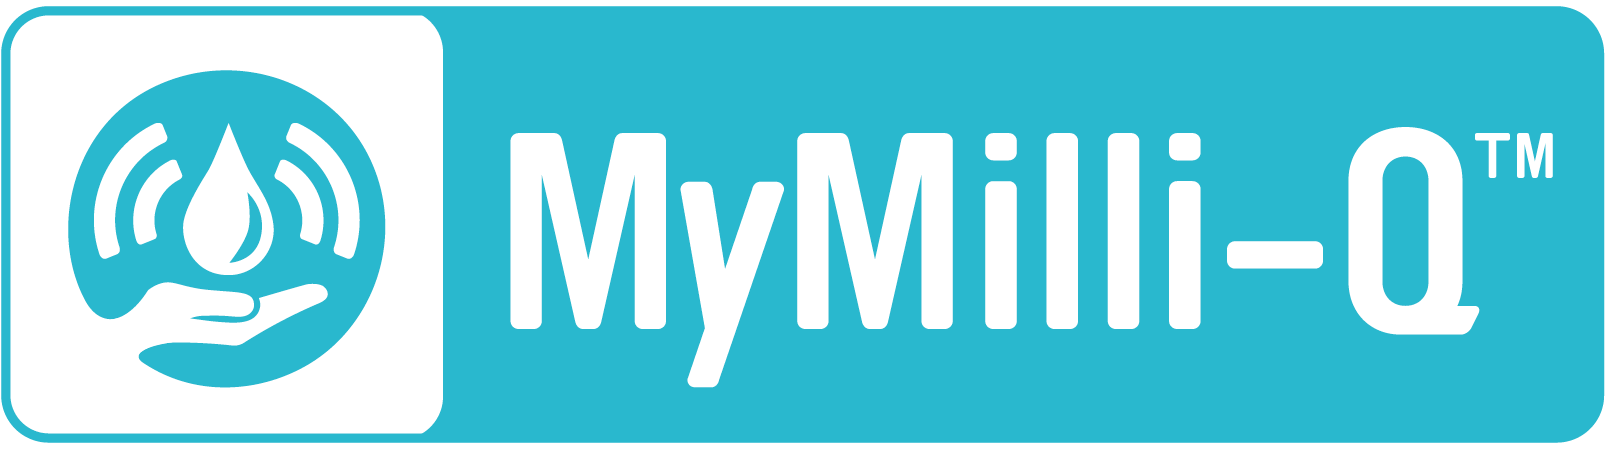 MyMilli-Q™数字化服务贴纸图标